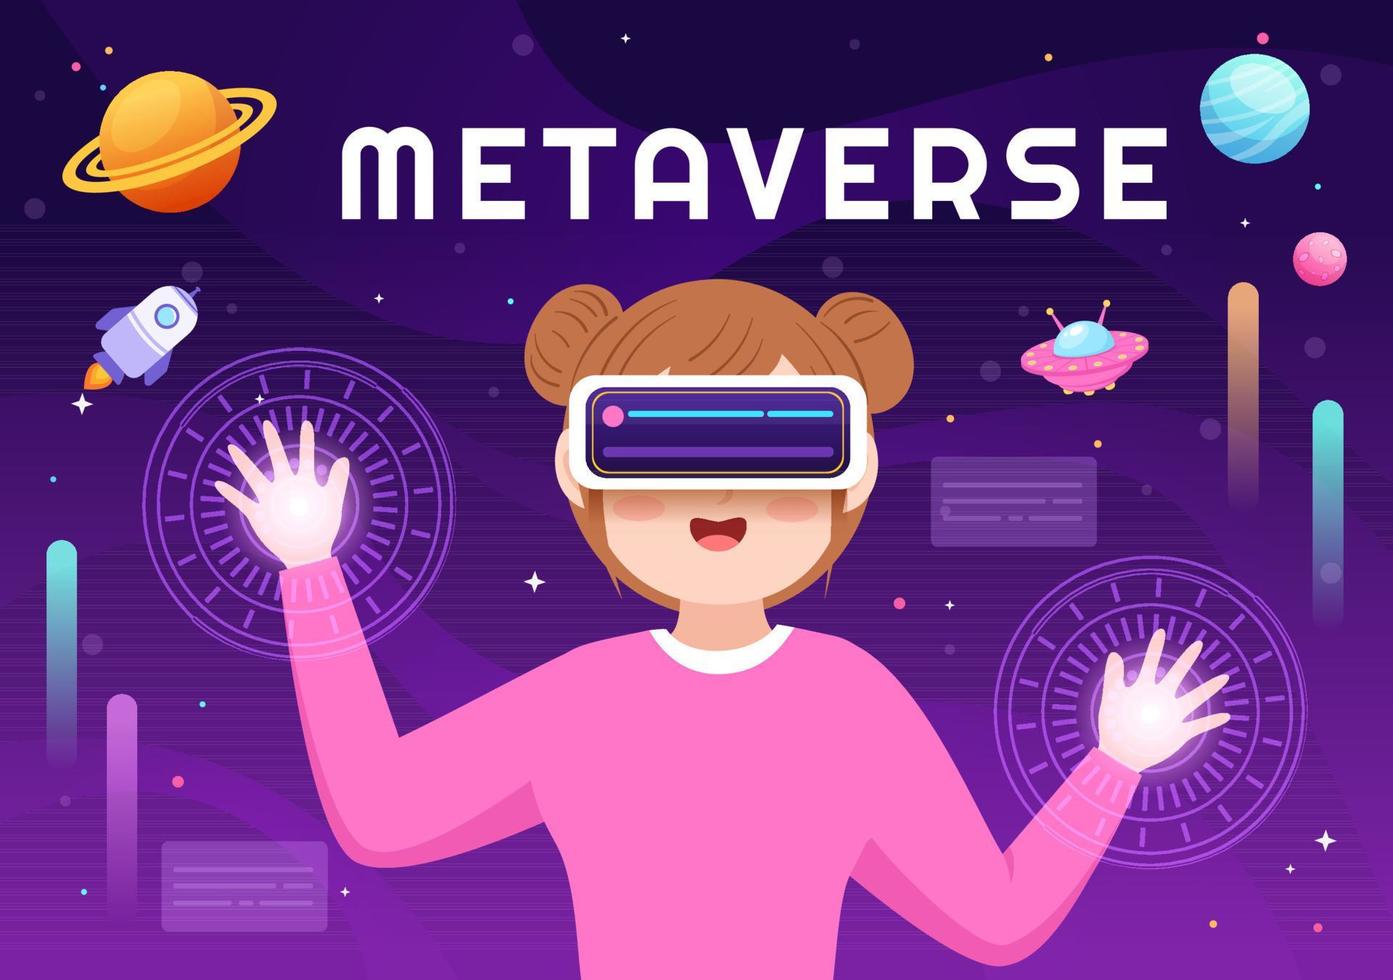 metaverse digitale virtual-reality-technologie trägt eine vr-brille für zukünftige innovationen und kommunikation in handgezeichneten flachen cartoon-illustrationen vektor